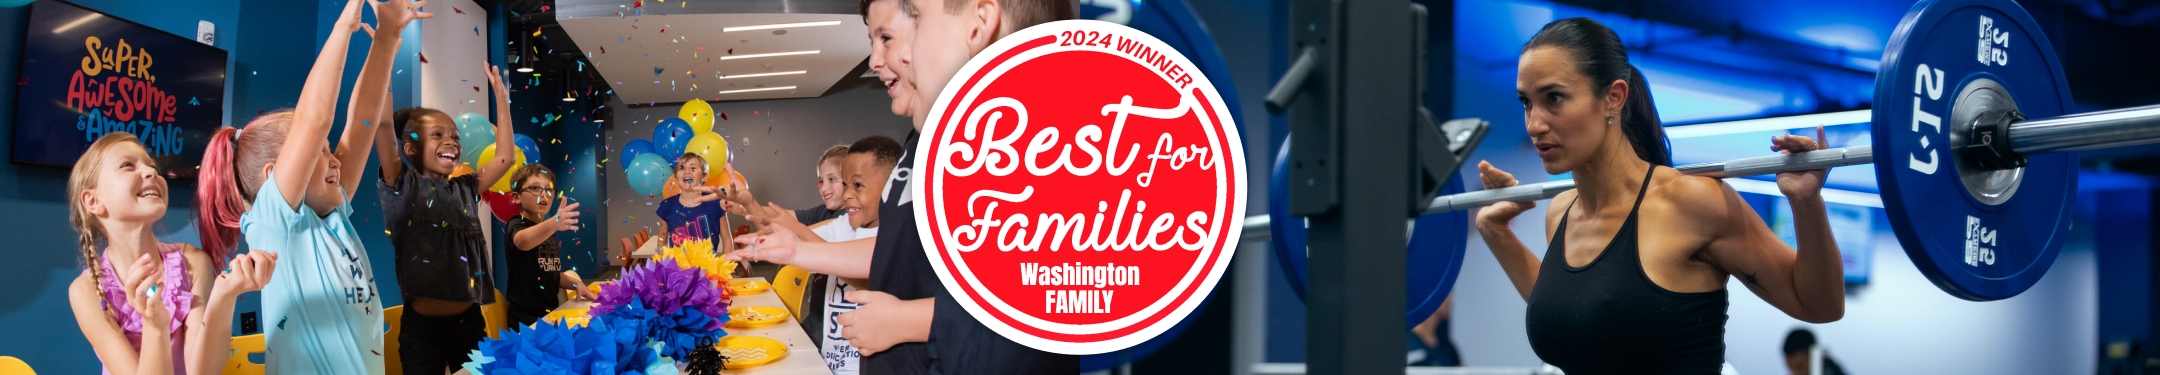 Best for Families, Washington Family 2024 Winner